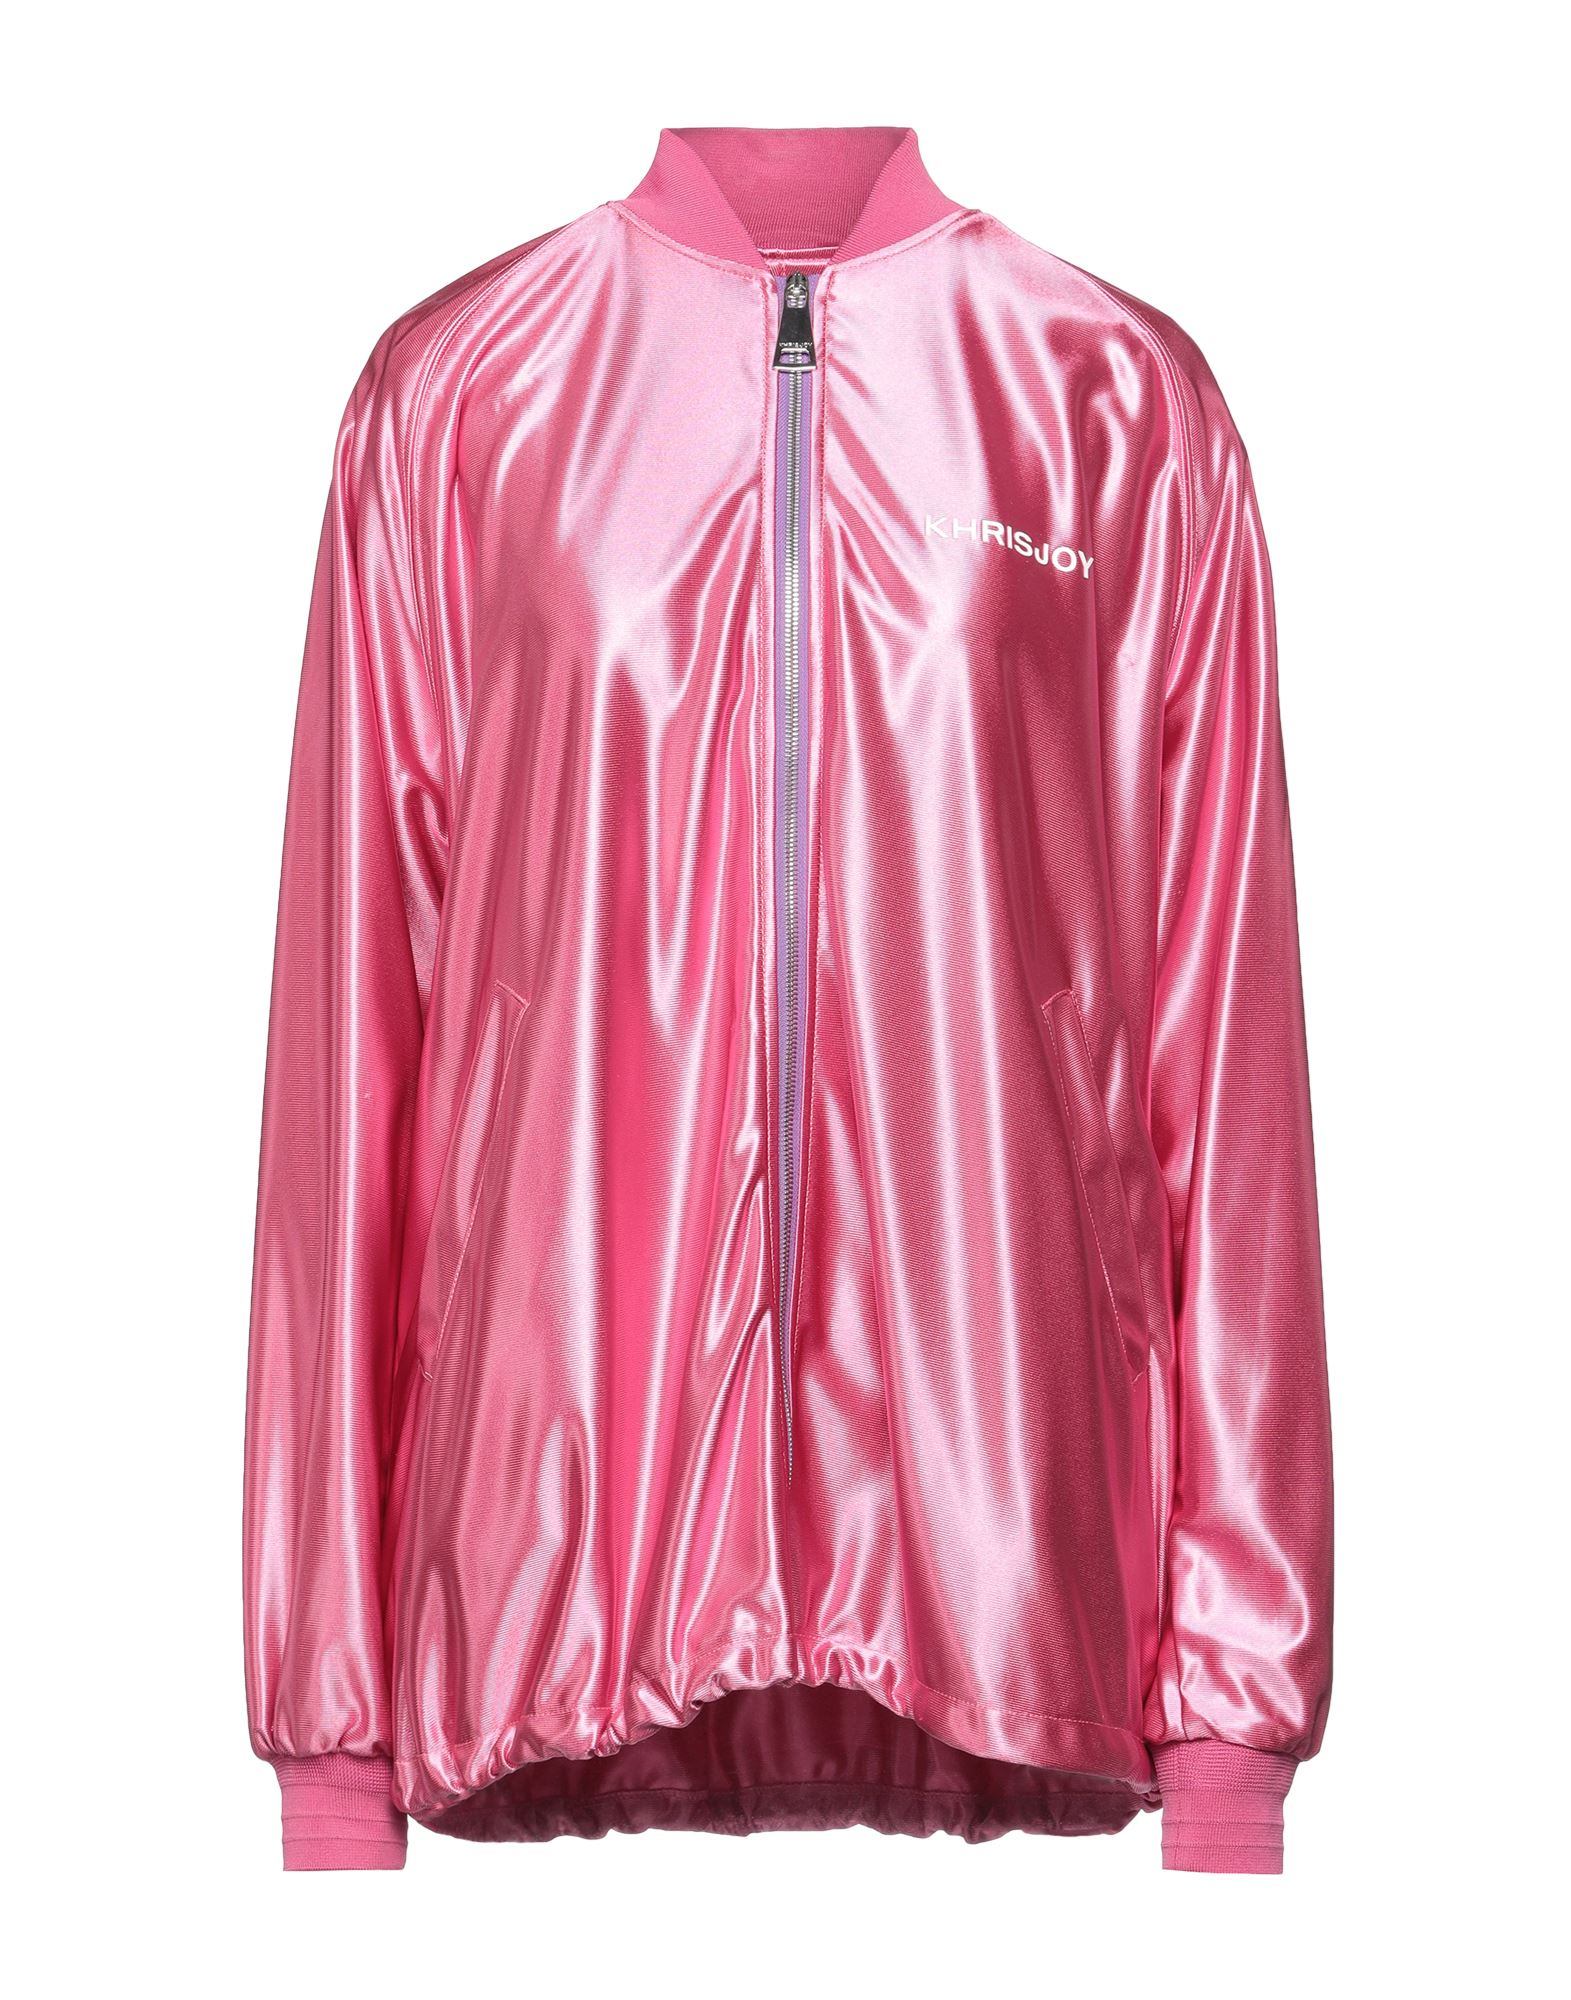 Shop Khrisjoy Woman Sweatshirt Pink Size 00 Polyester